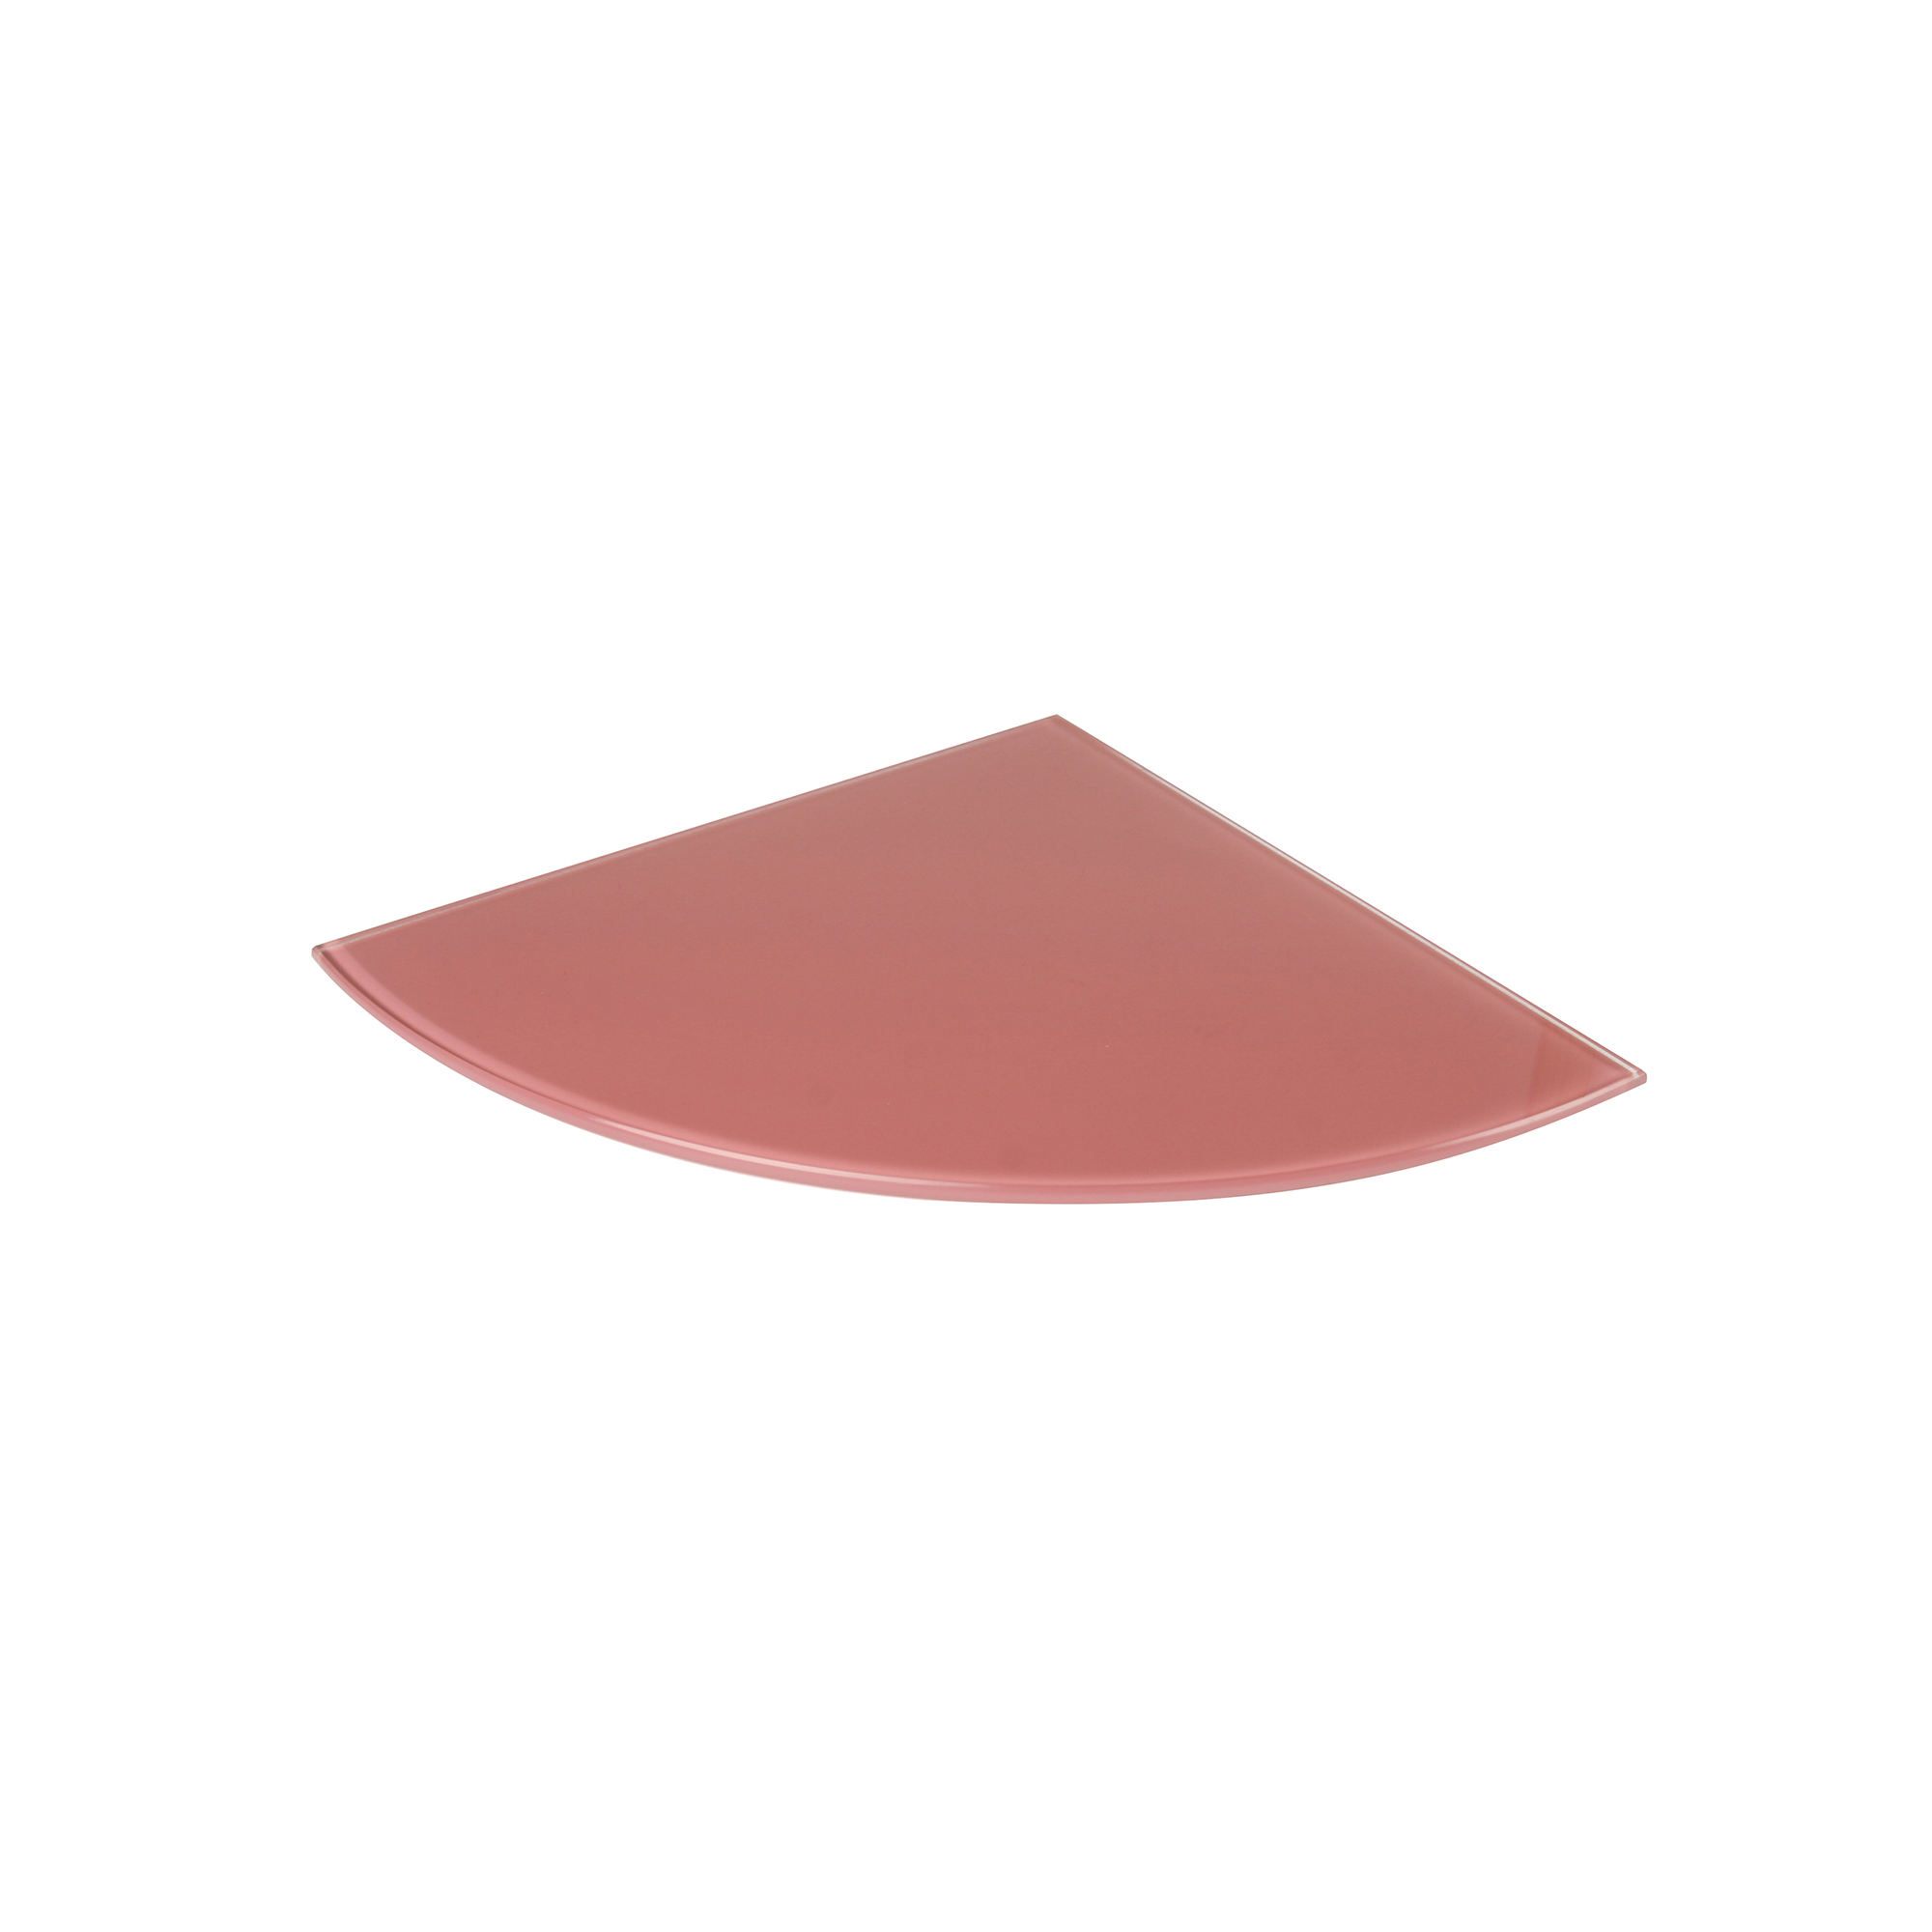 Estante de Cristal Esquinero Acabado en Rojo Fresa | Medidas 250*6*250 mm | Espesor de la Balda: 6 mm | 1 Unidad